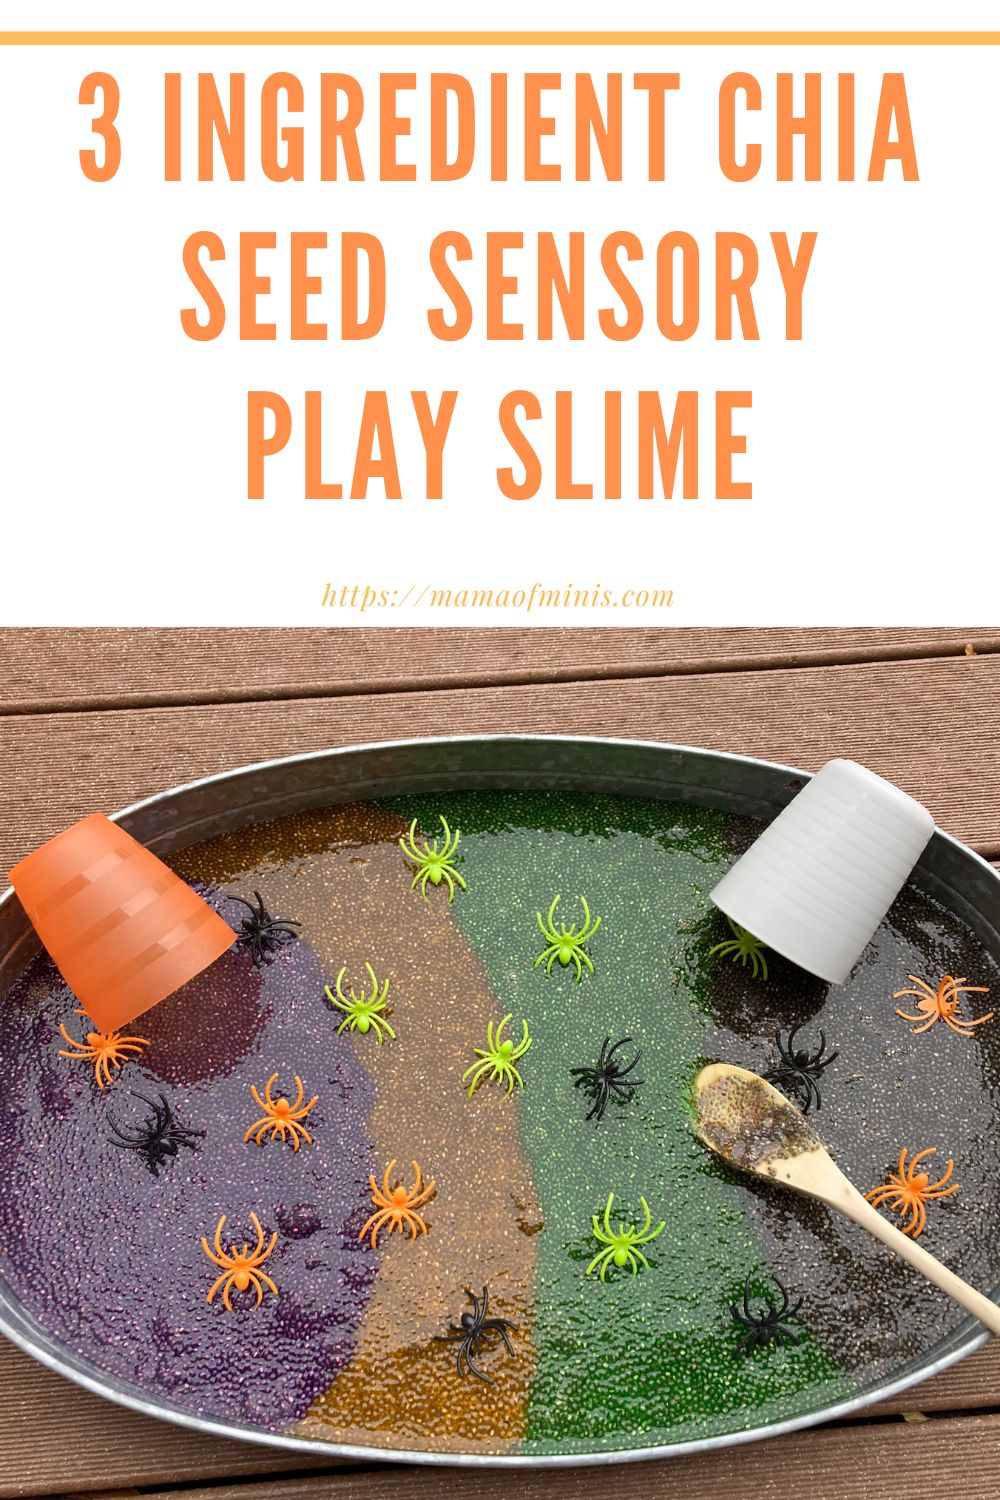 3 Ingredient Chia Seed Sensory Play Slime